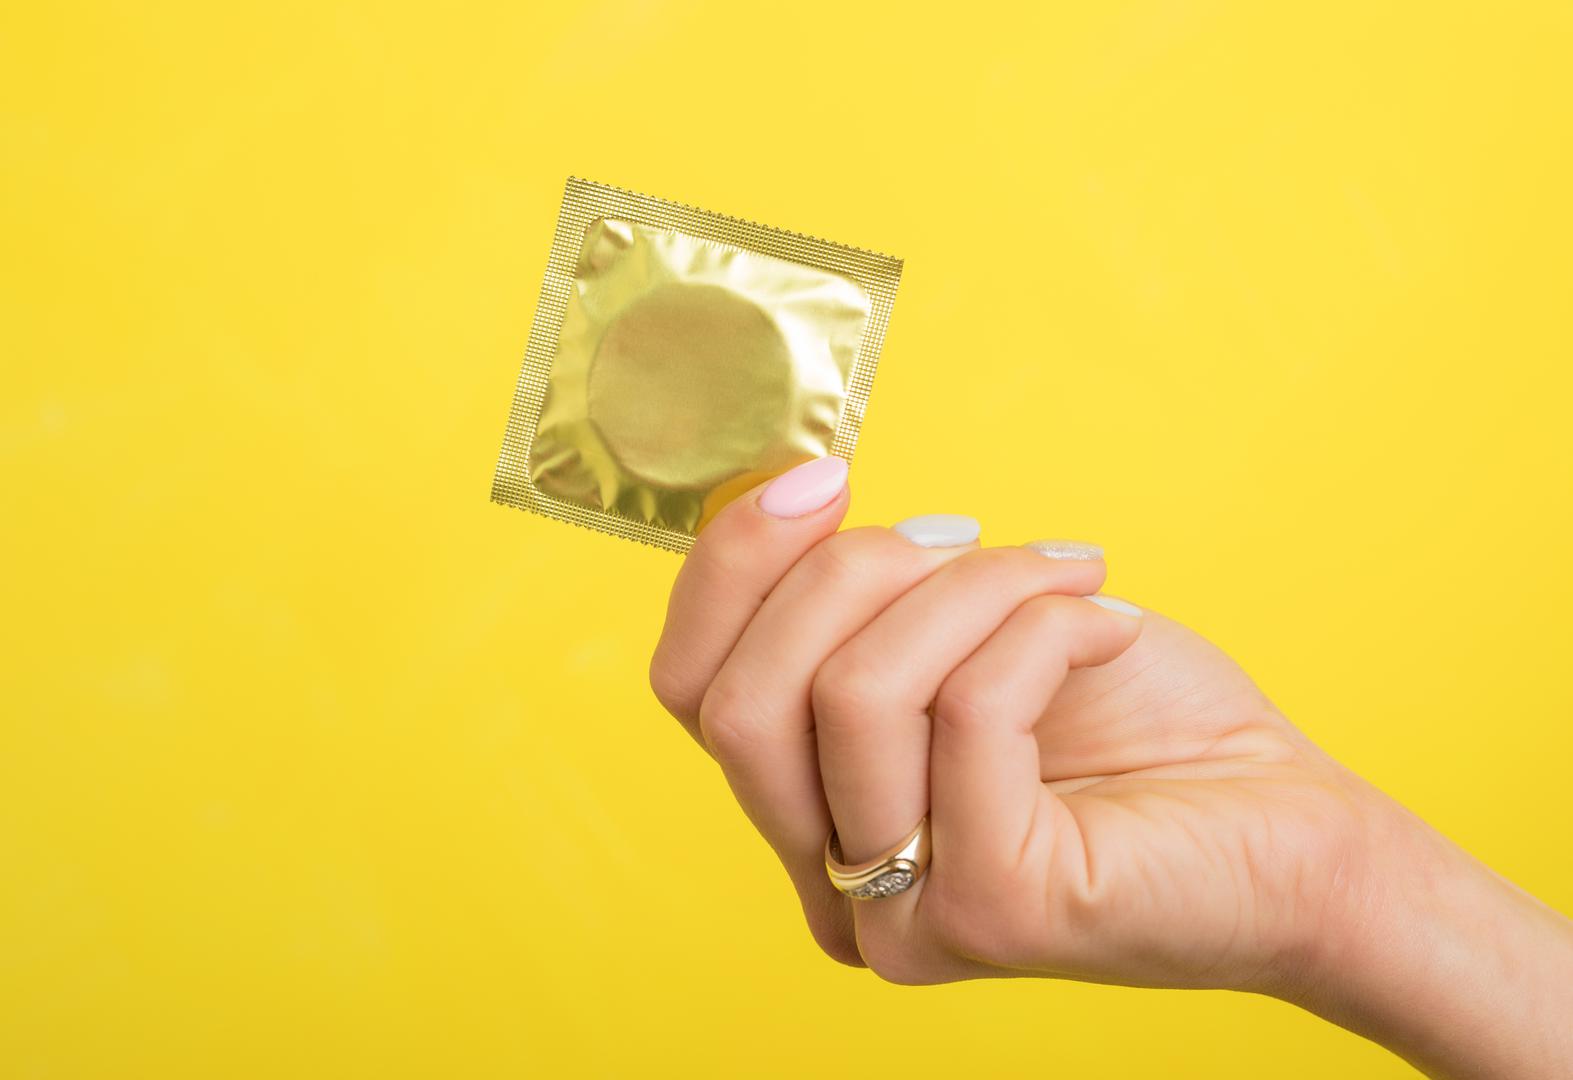 Prosječna dužina penisa je 14 centimetara u erekciji, a kondomi su rađeni za dužinu od 17 centimetara. Stoga ne čudi što se mnoštvo muškaraca nalazi u problemu s odabirom pravom kondoma. 